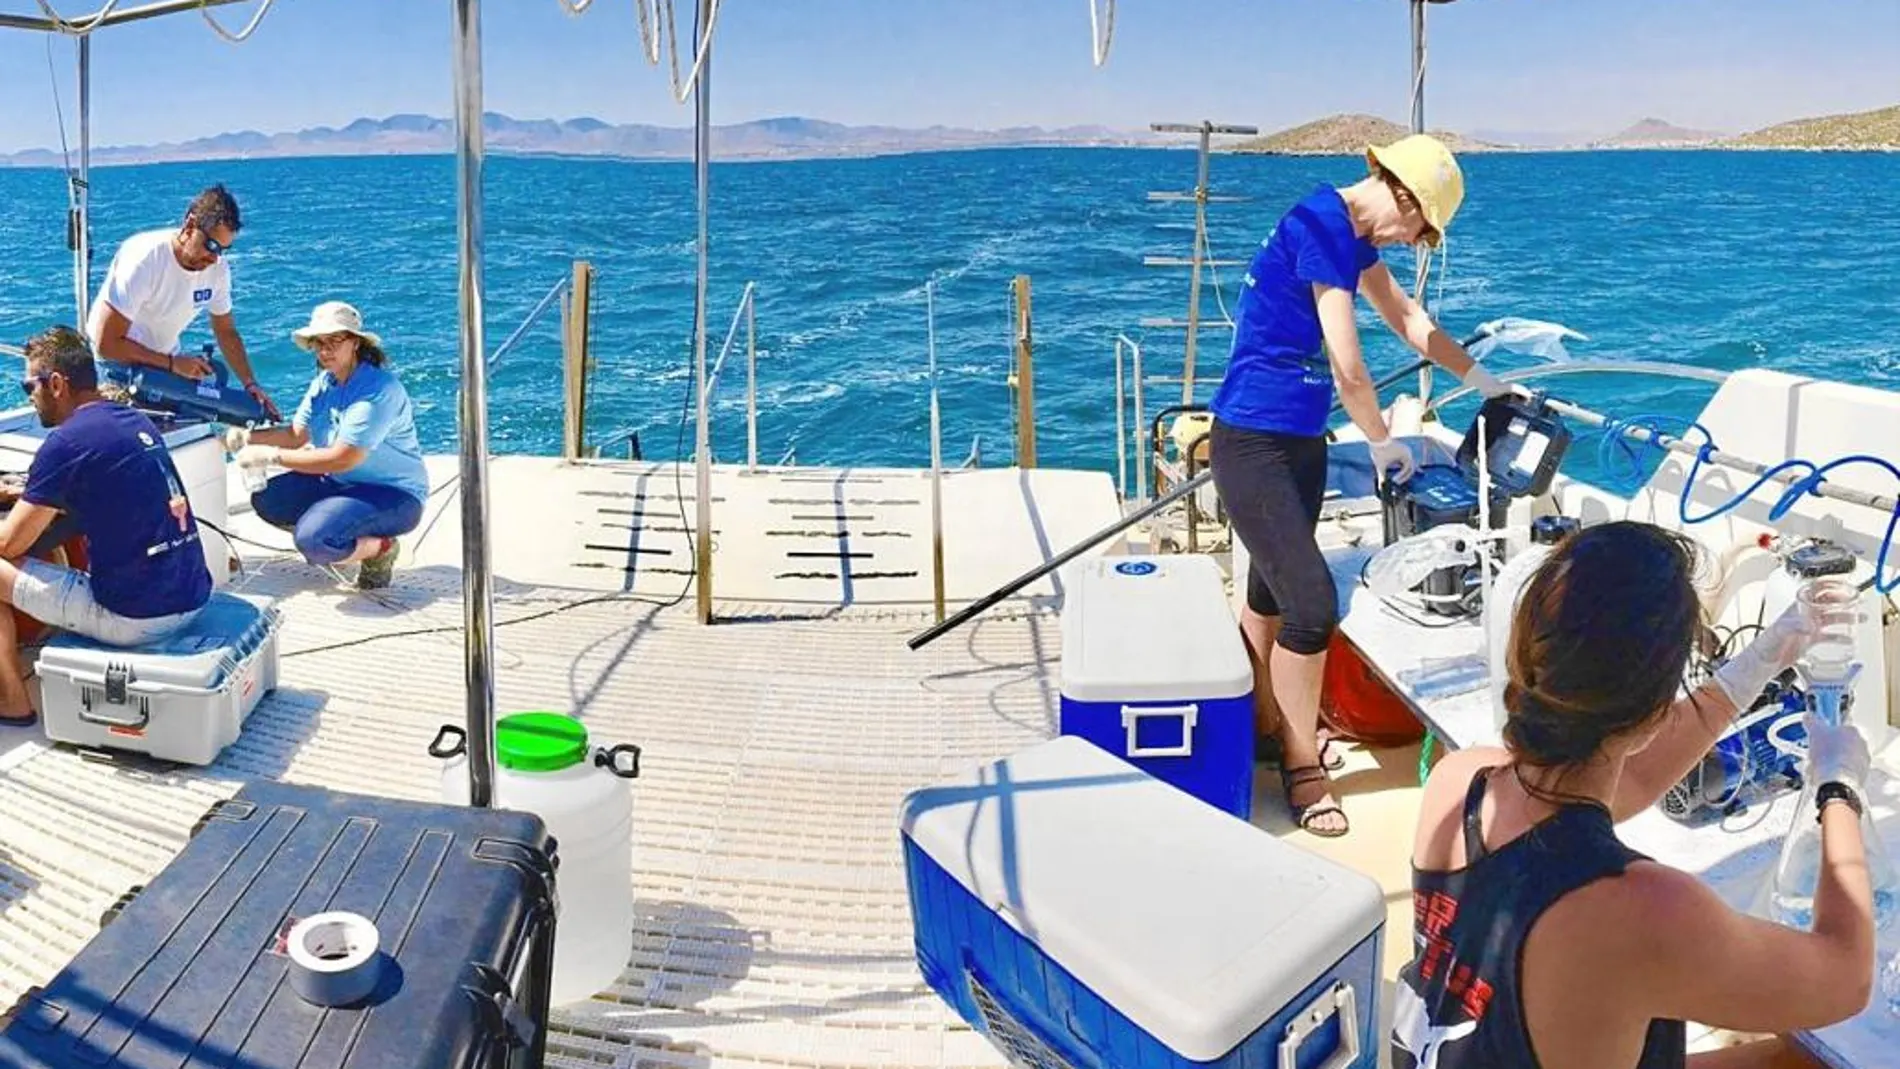 Investigadores y científicos trabajan sobre la laguna evaluando y midiendo los indicadores y comprobando el estado del Mar Menor